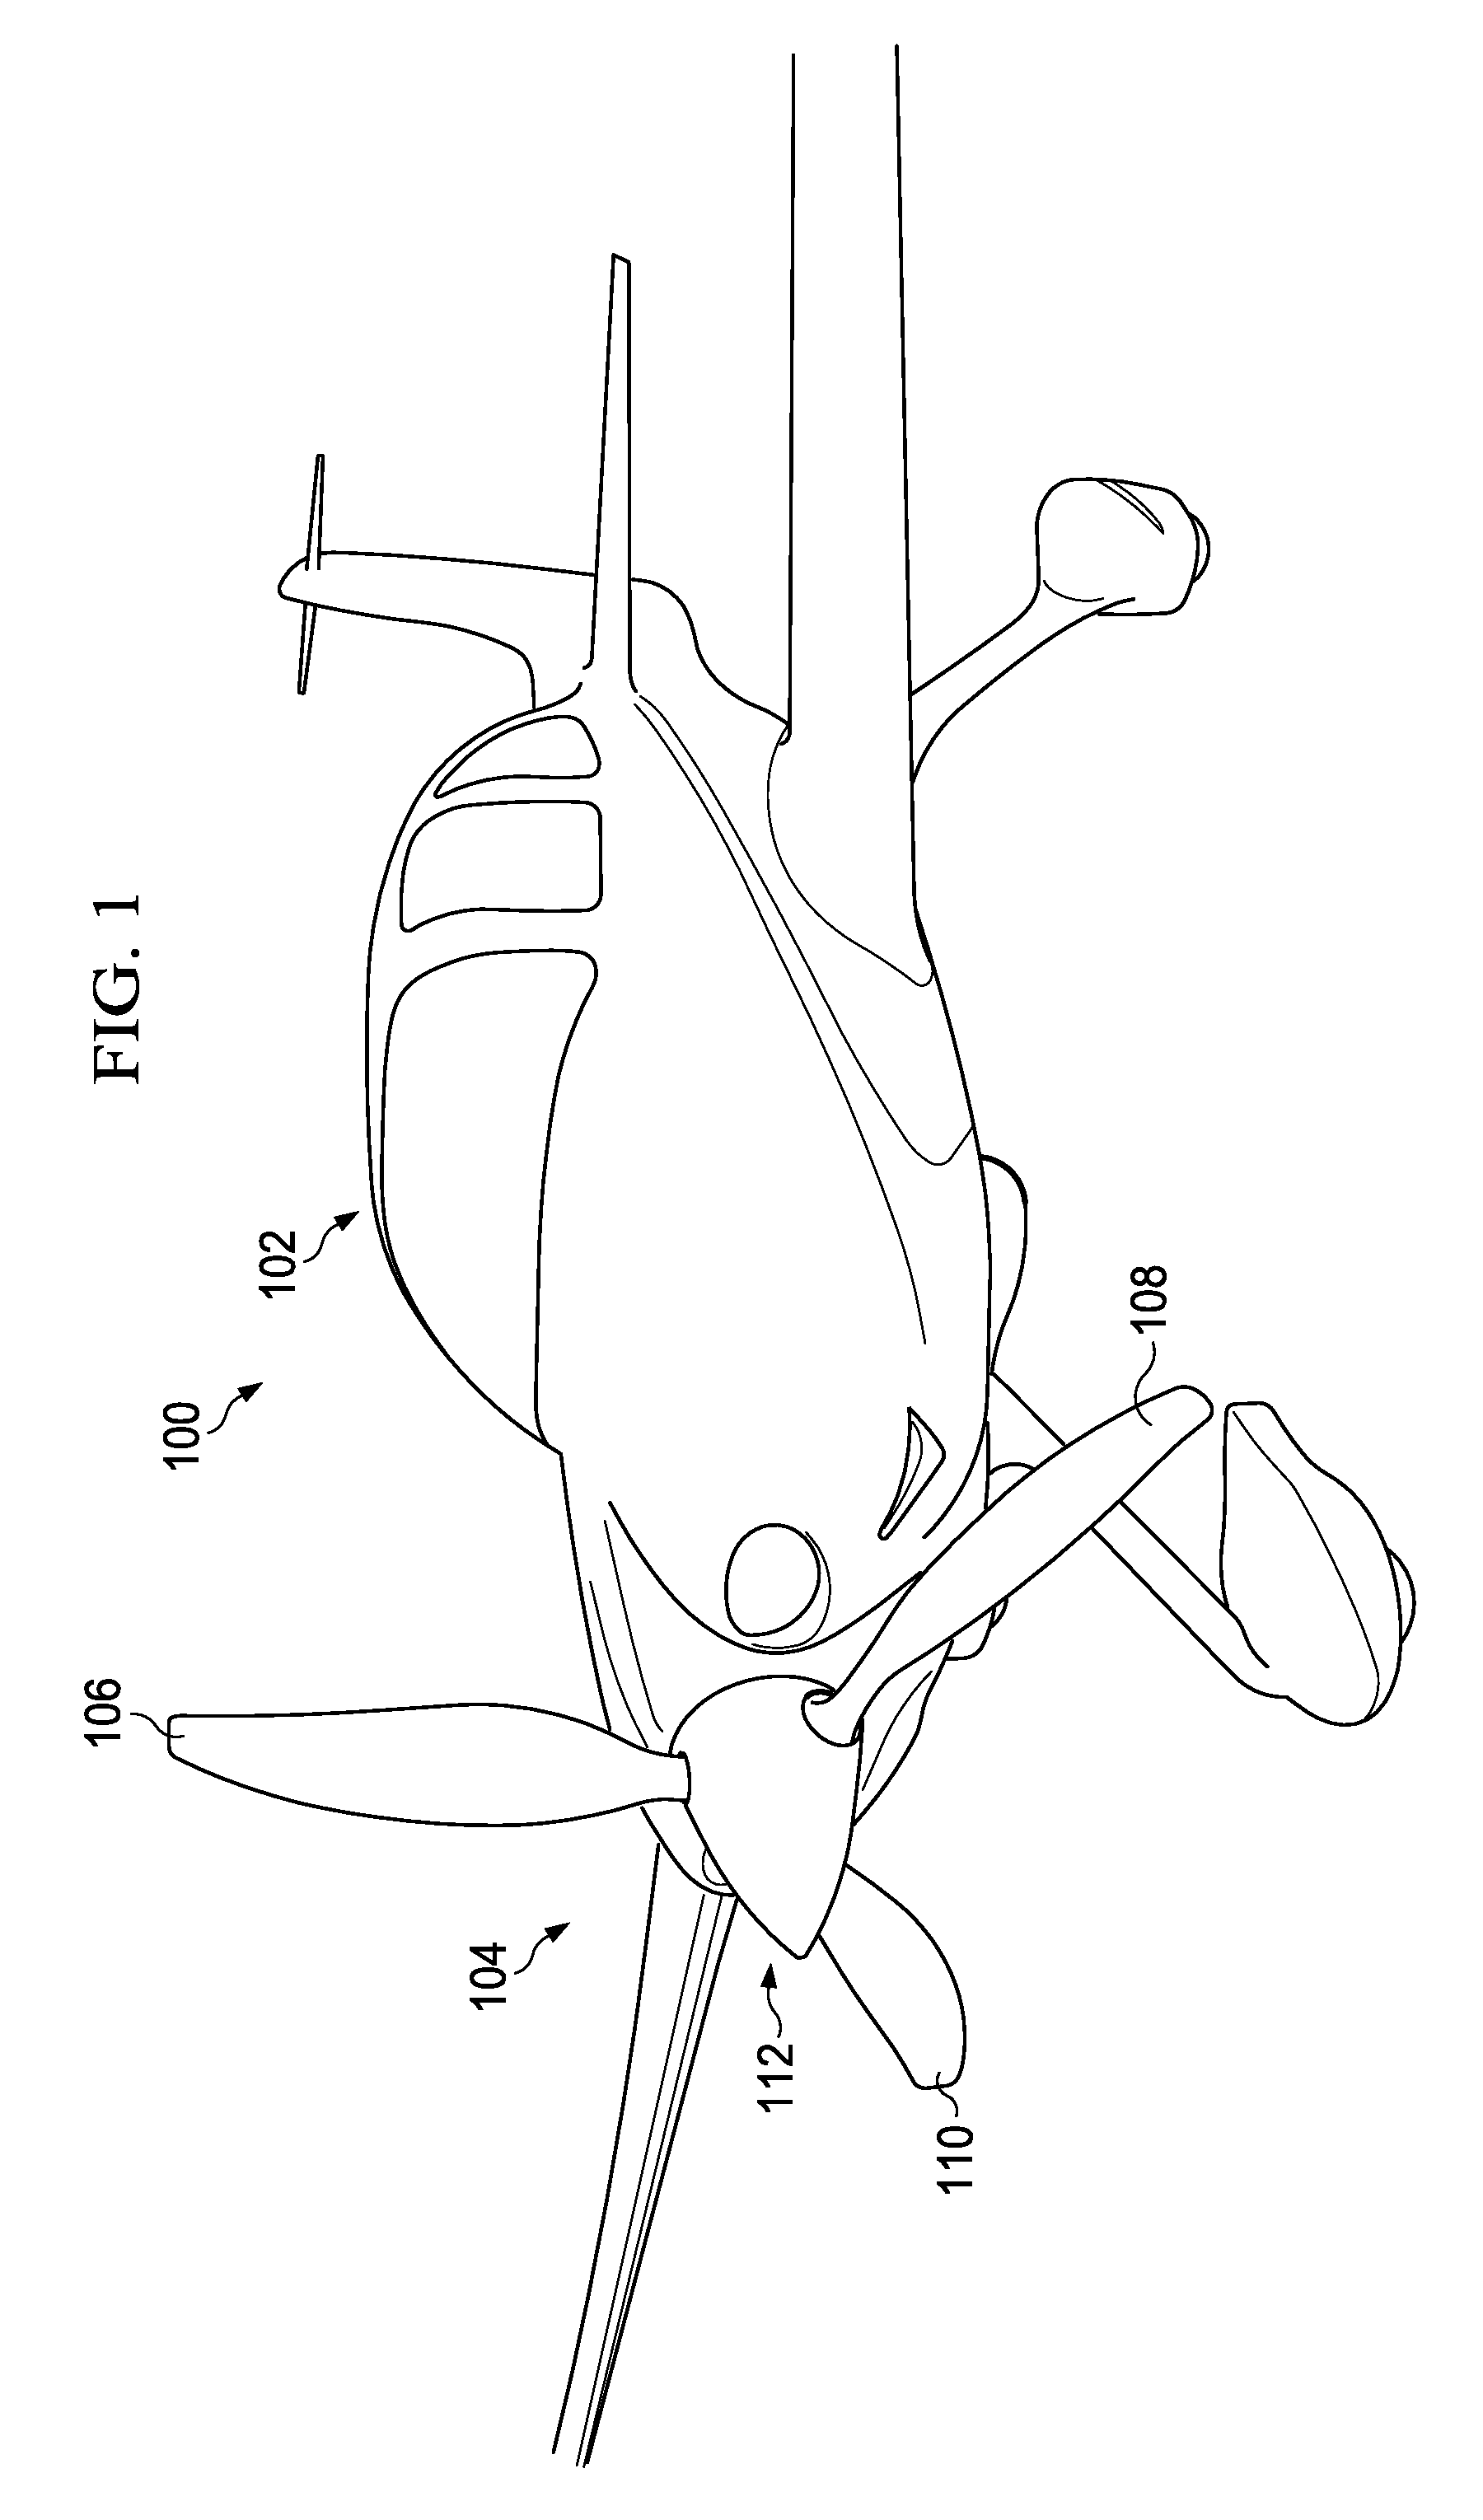 Composite propeller spar